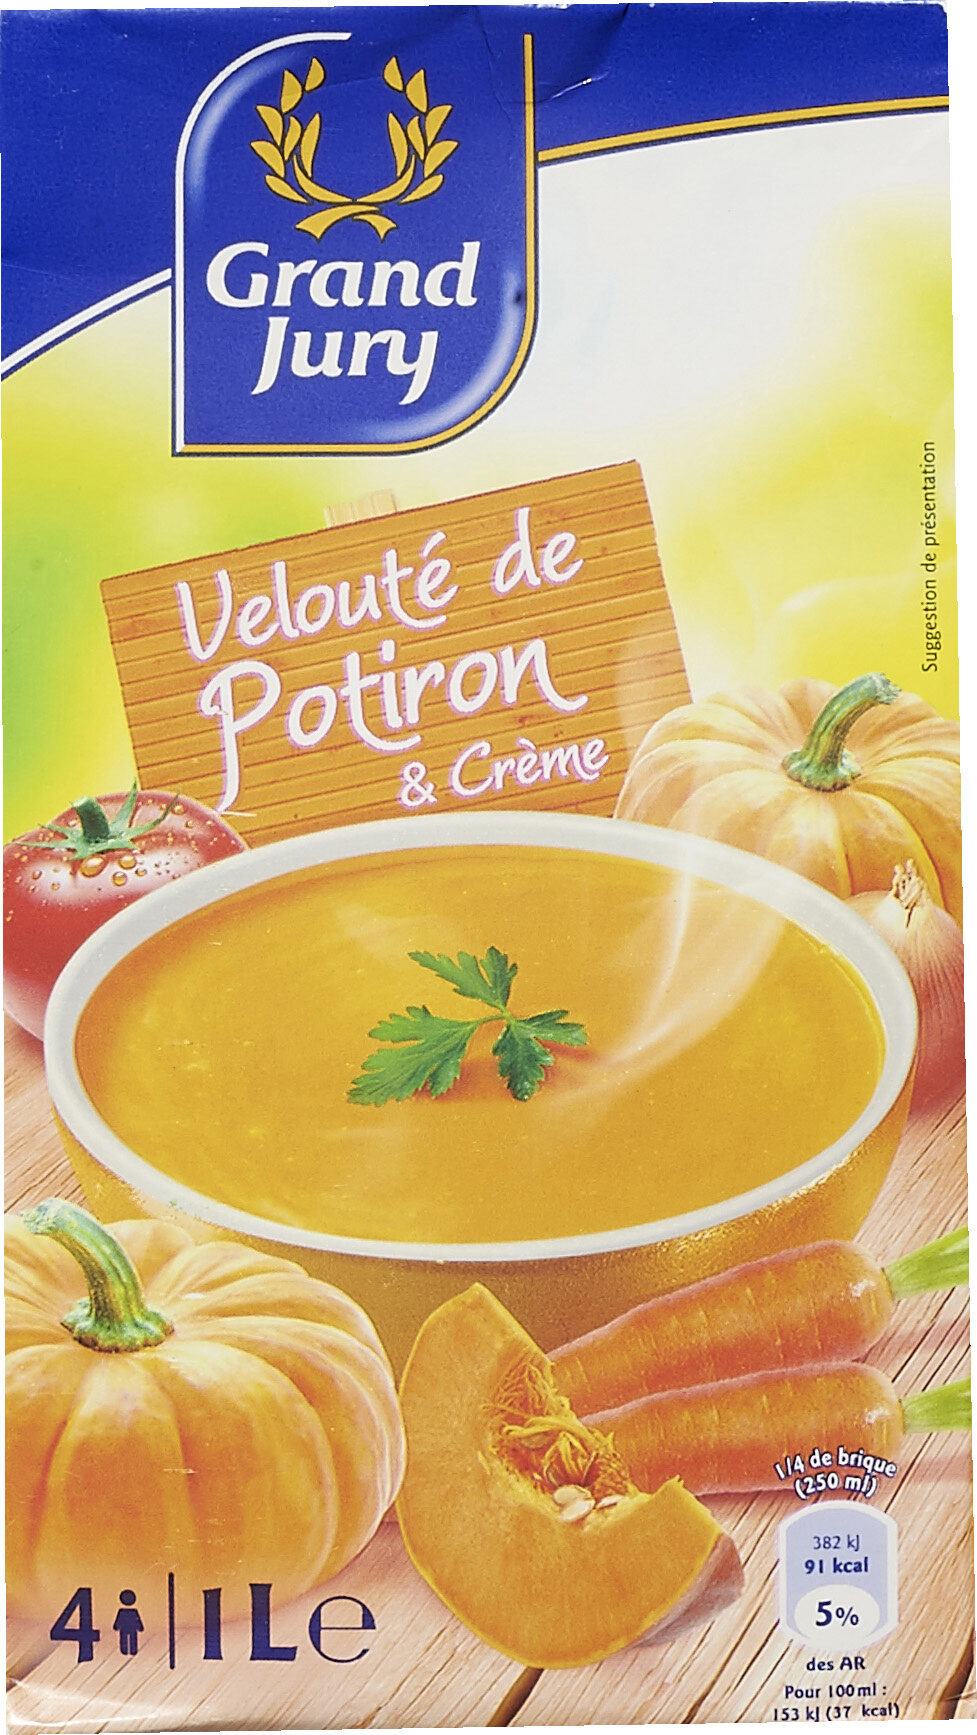 Velouté de Potiron & Crème - Product - fr